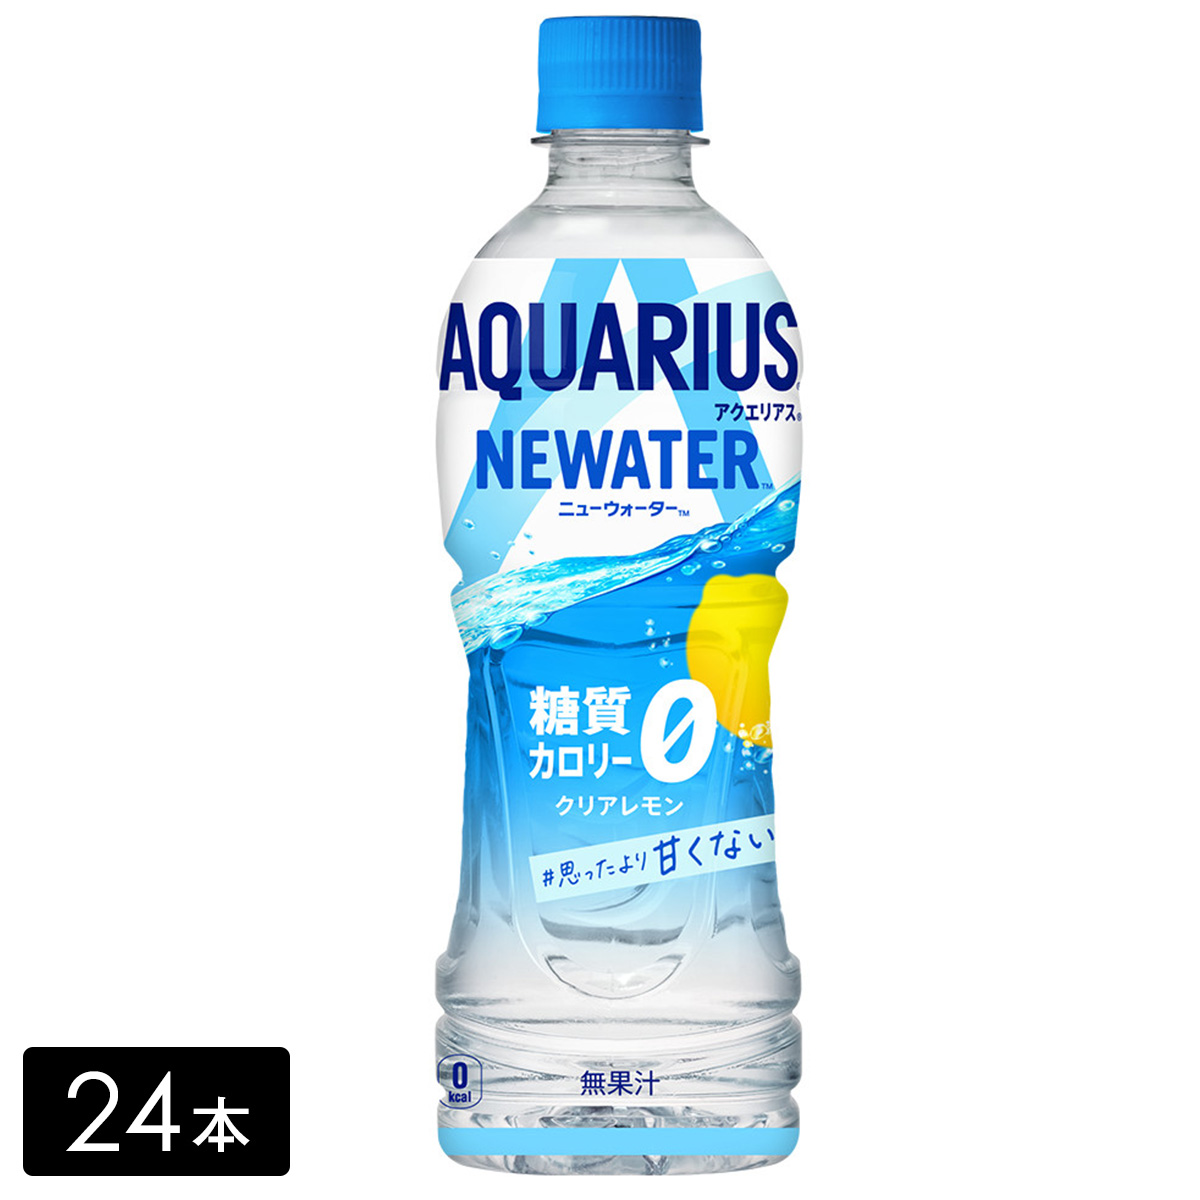 アクエリアス NEWATER(ニューウォーター) 500ml×24本(1箱) カロリーゼロ 糖質ゼロ 熱中症対策 水分補給 AQUARIUS ペットボトル ケース売り